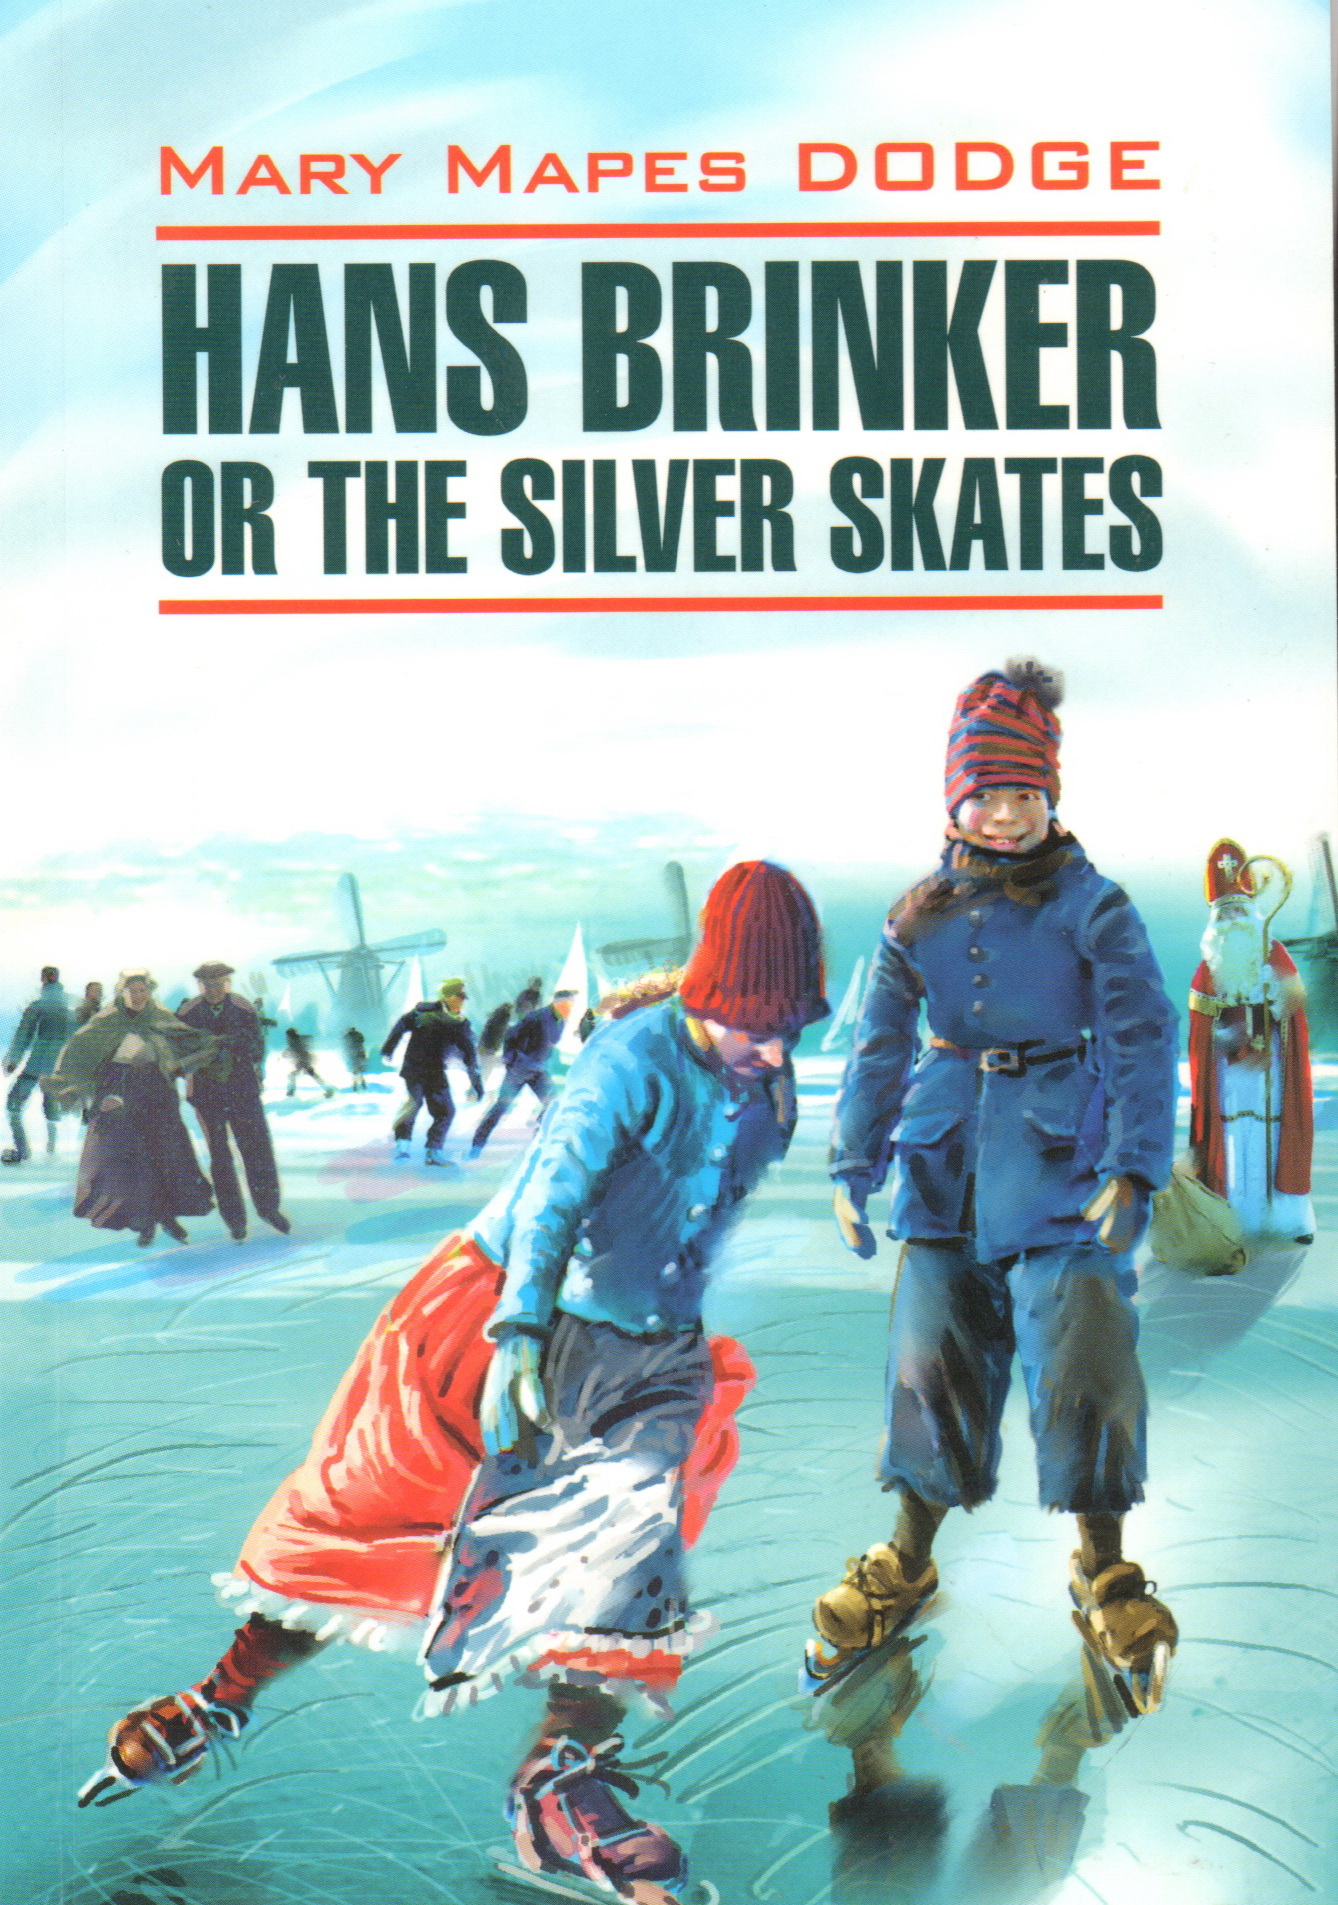  . Hans brinker or the silver skates (, .., .).  ..